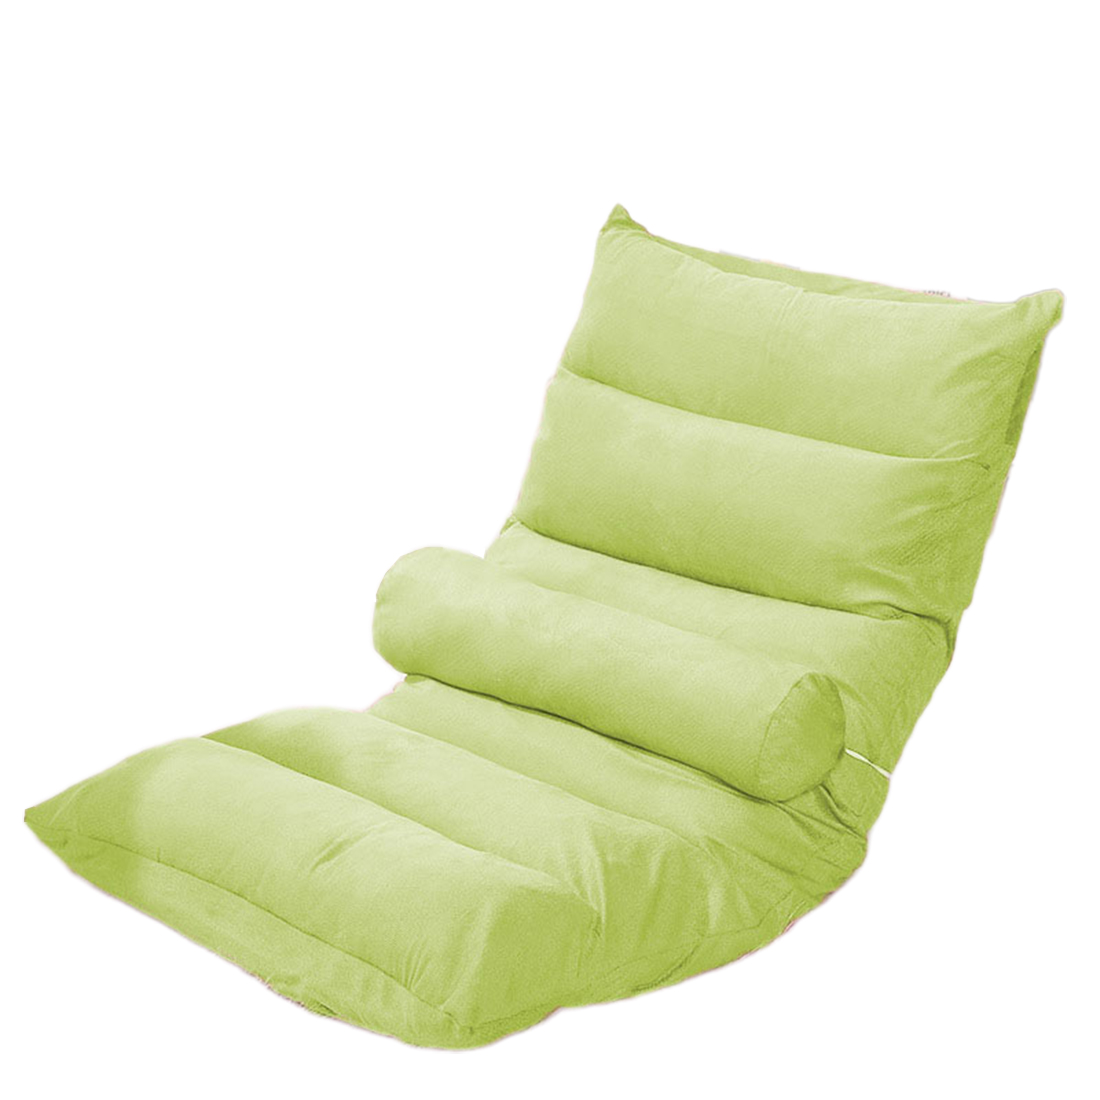 6 plaid green ( send waist pillow ) independent liner